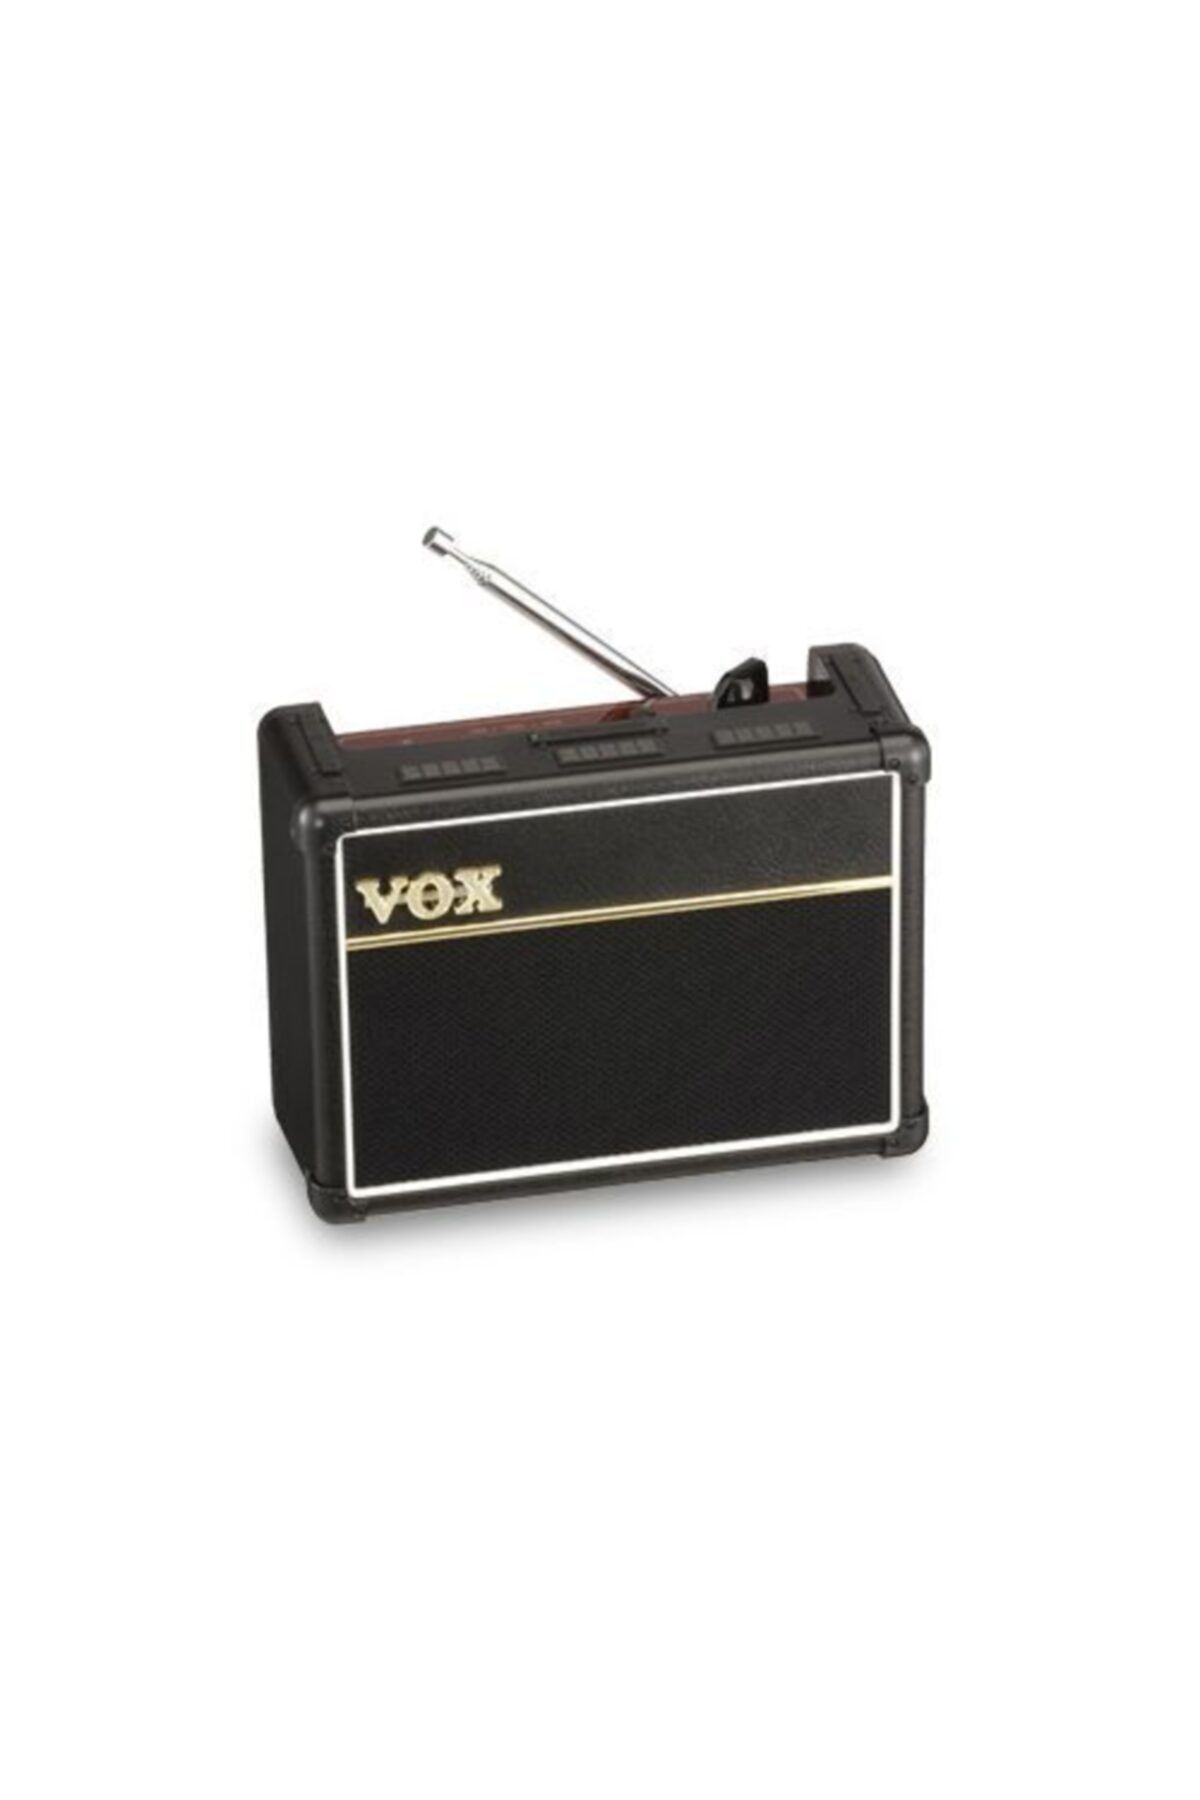 VOX Ac30 Radio